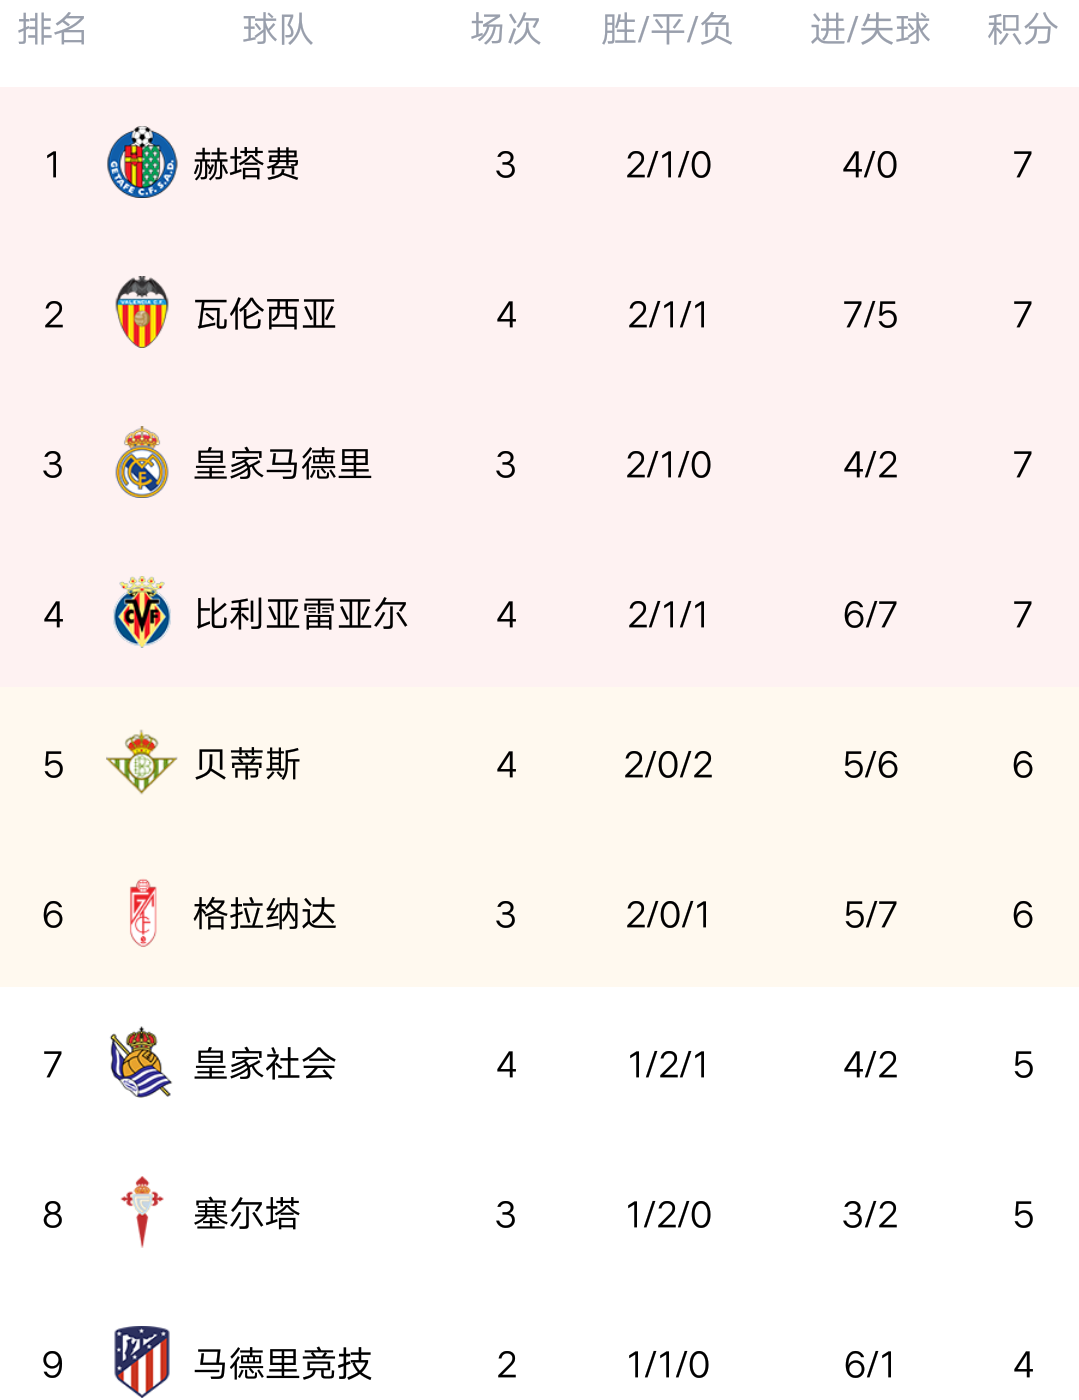 江南体育：西甲第28轮积分榜，前7位置不变，瓦伦跌入降级区 - 哔哩哔哩